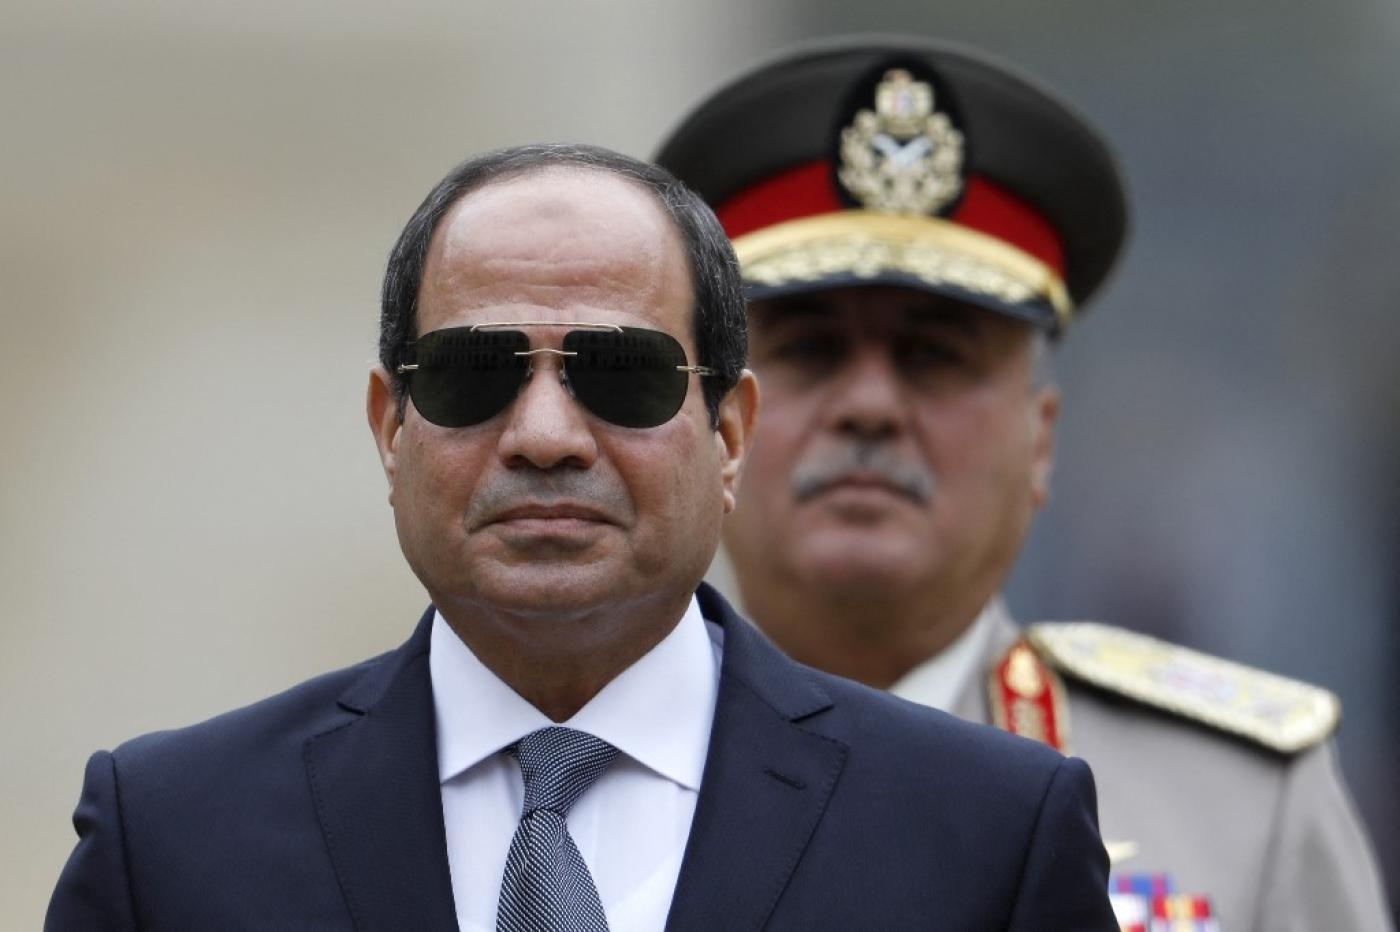 Le président égyptien Abdel Fattah al-Sissi, en octobre 2017 à Paris (AFP)